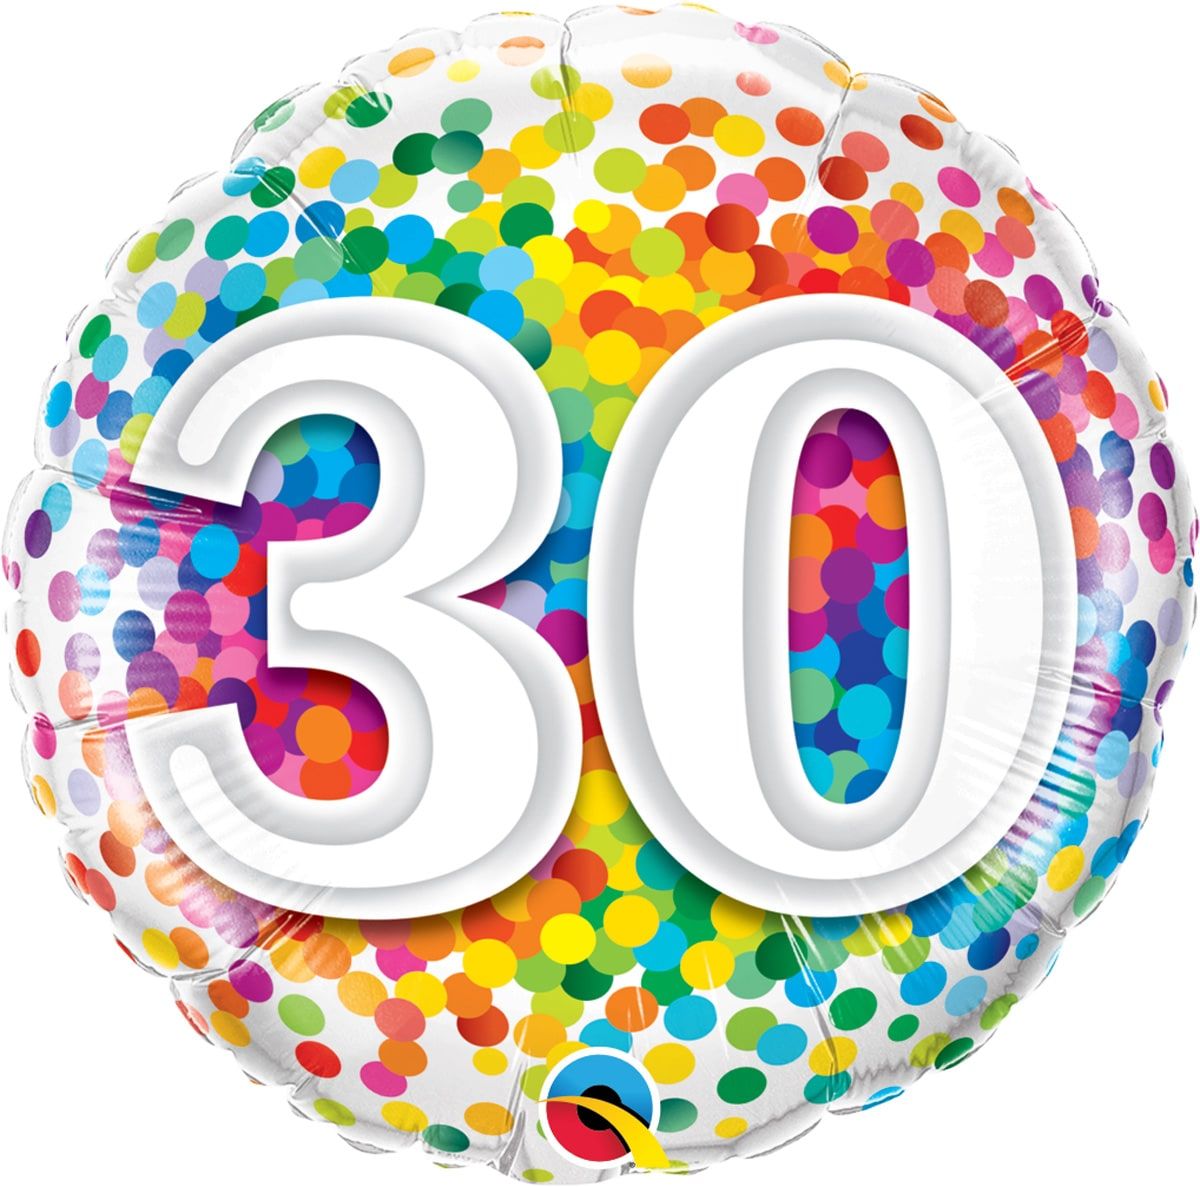 Folieballon 30 jaar confetti regenboog